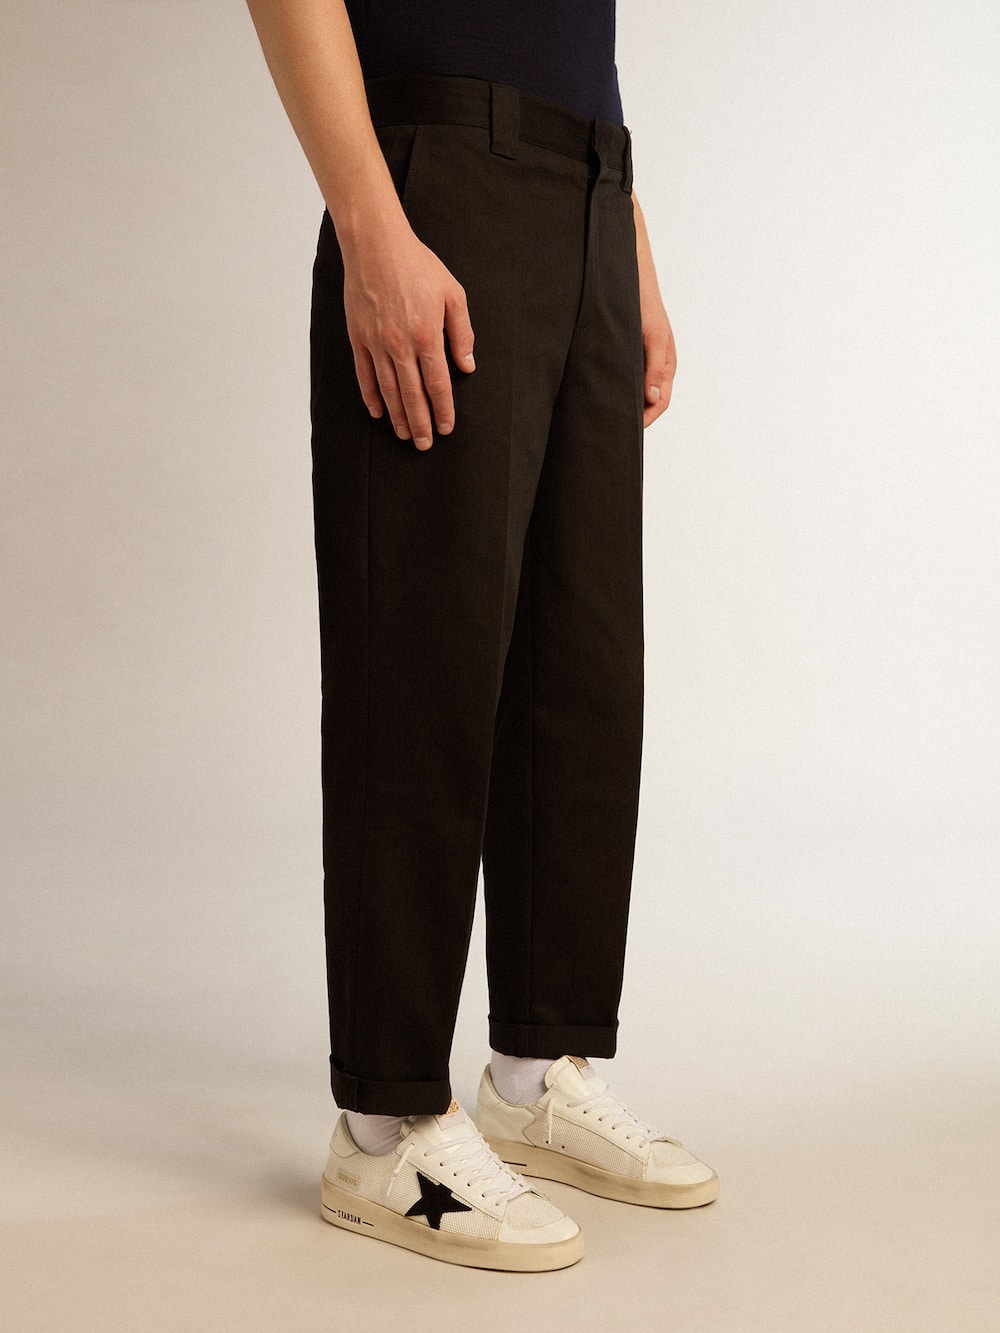 Golden Goose - Pantalón chino de hombre en algodón color negro in 